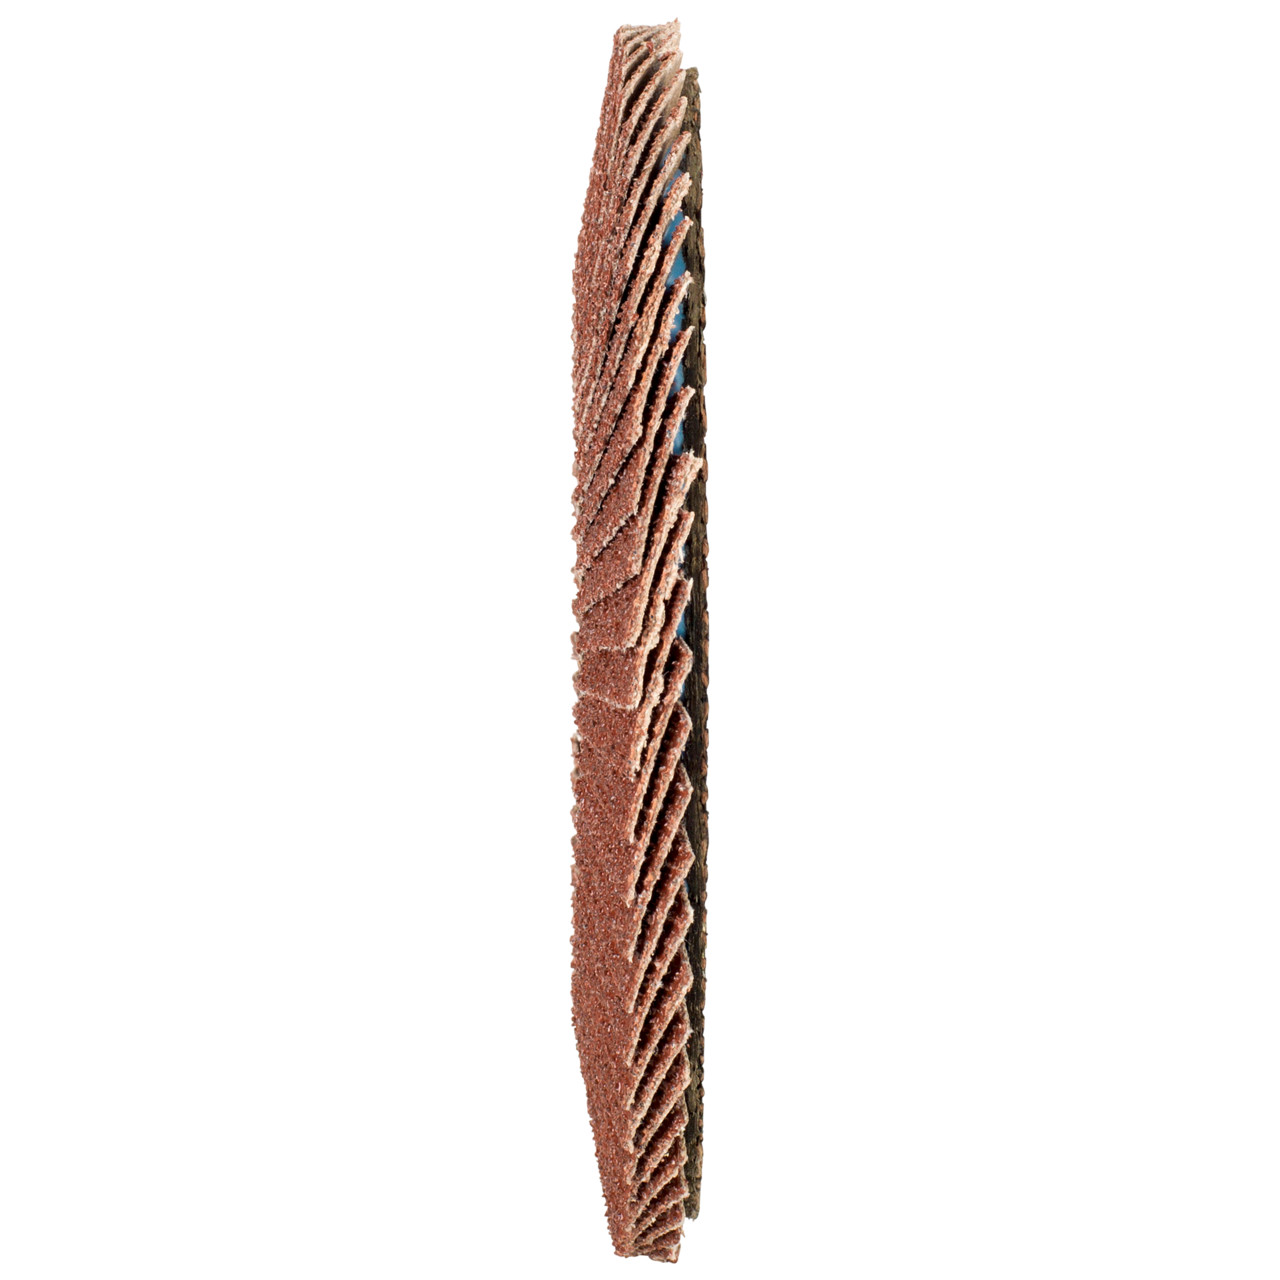 Tyrolit Arandela de seguridad dentada DxH 125x22,2 Para acero, P60, forma: 28A - versión recta (versión con cuerpo de soporte de fibra de vidrio), Art. 728528